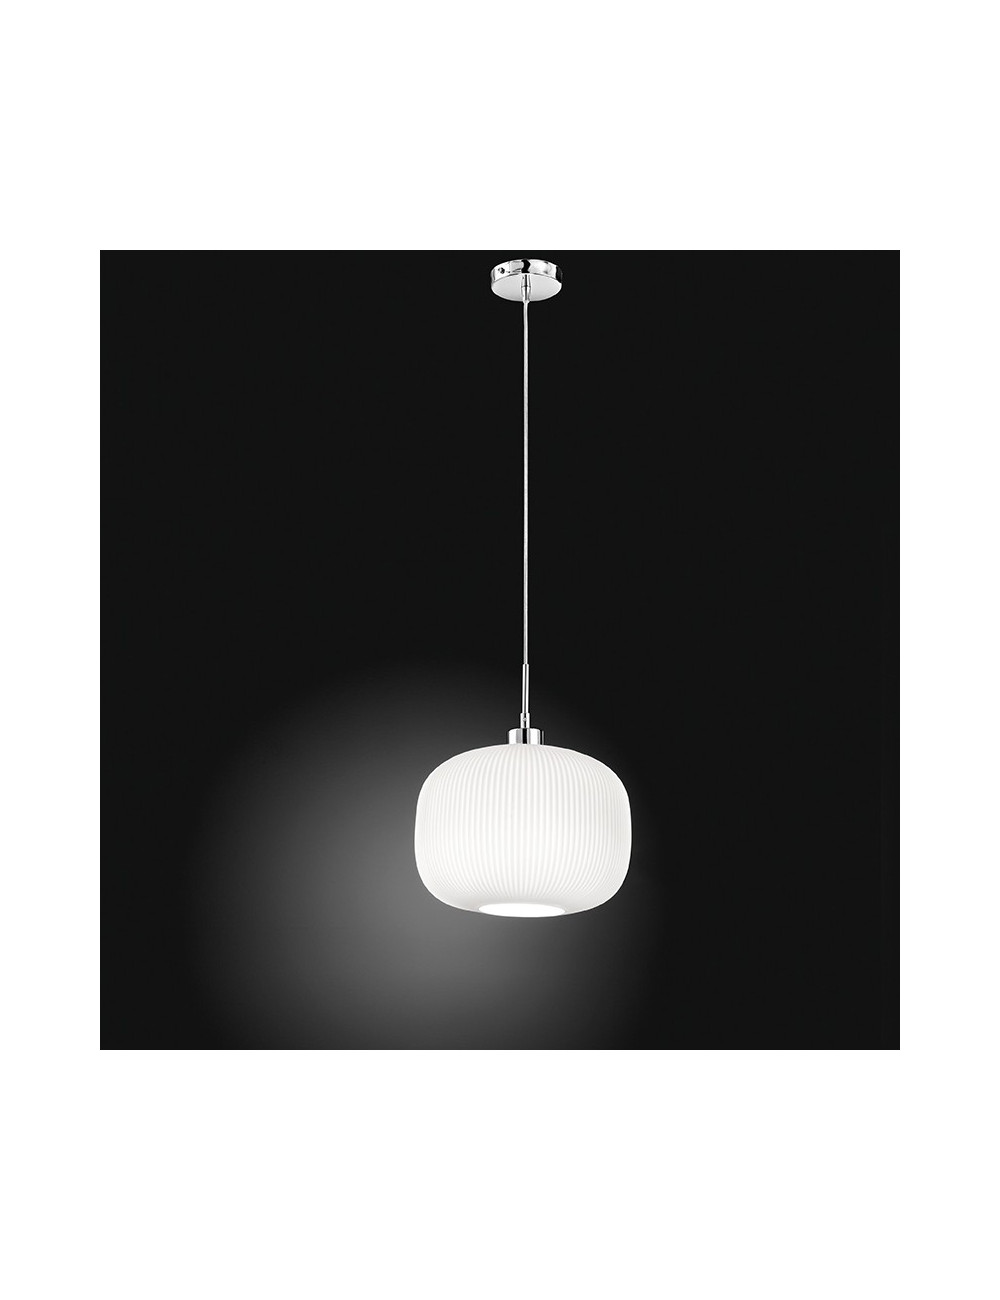 SWEET 6342 Perenz de l'éclairage | Lampe pendentif Moderne en Verre Blanc Nervuré